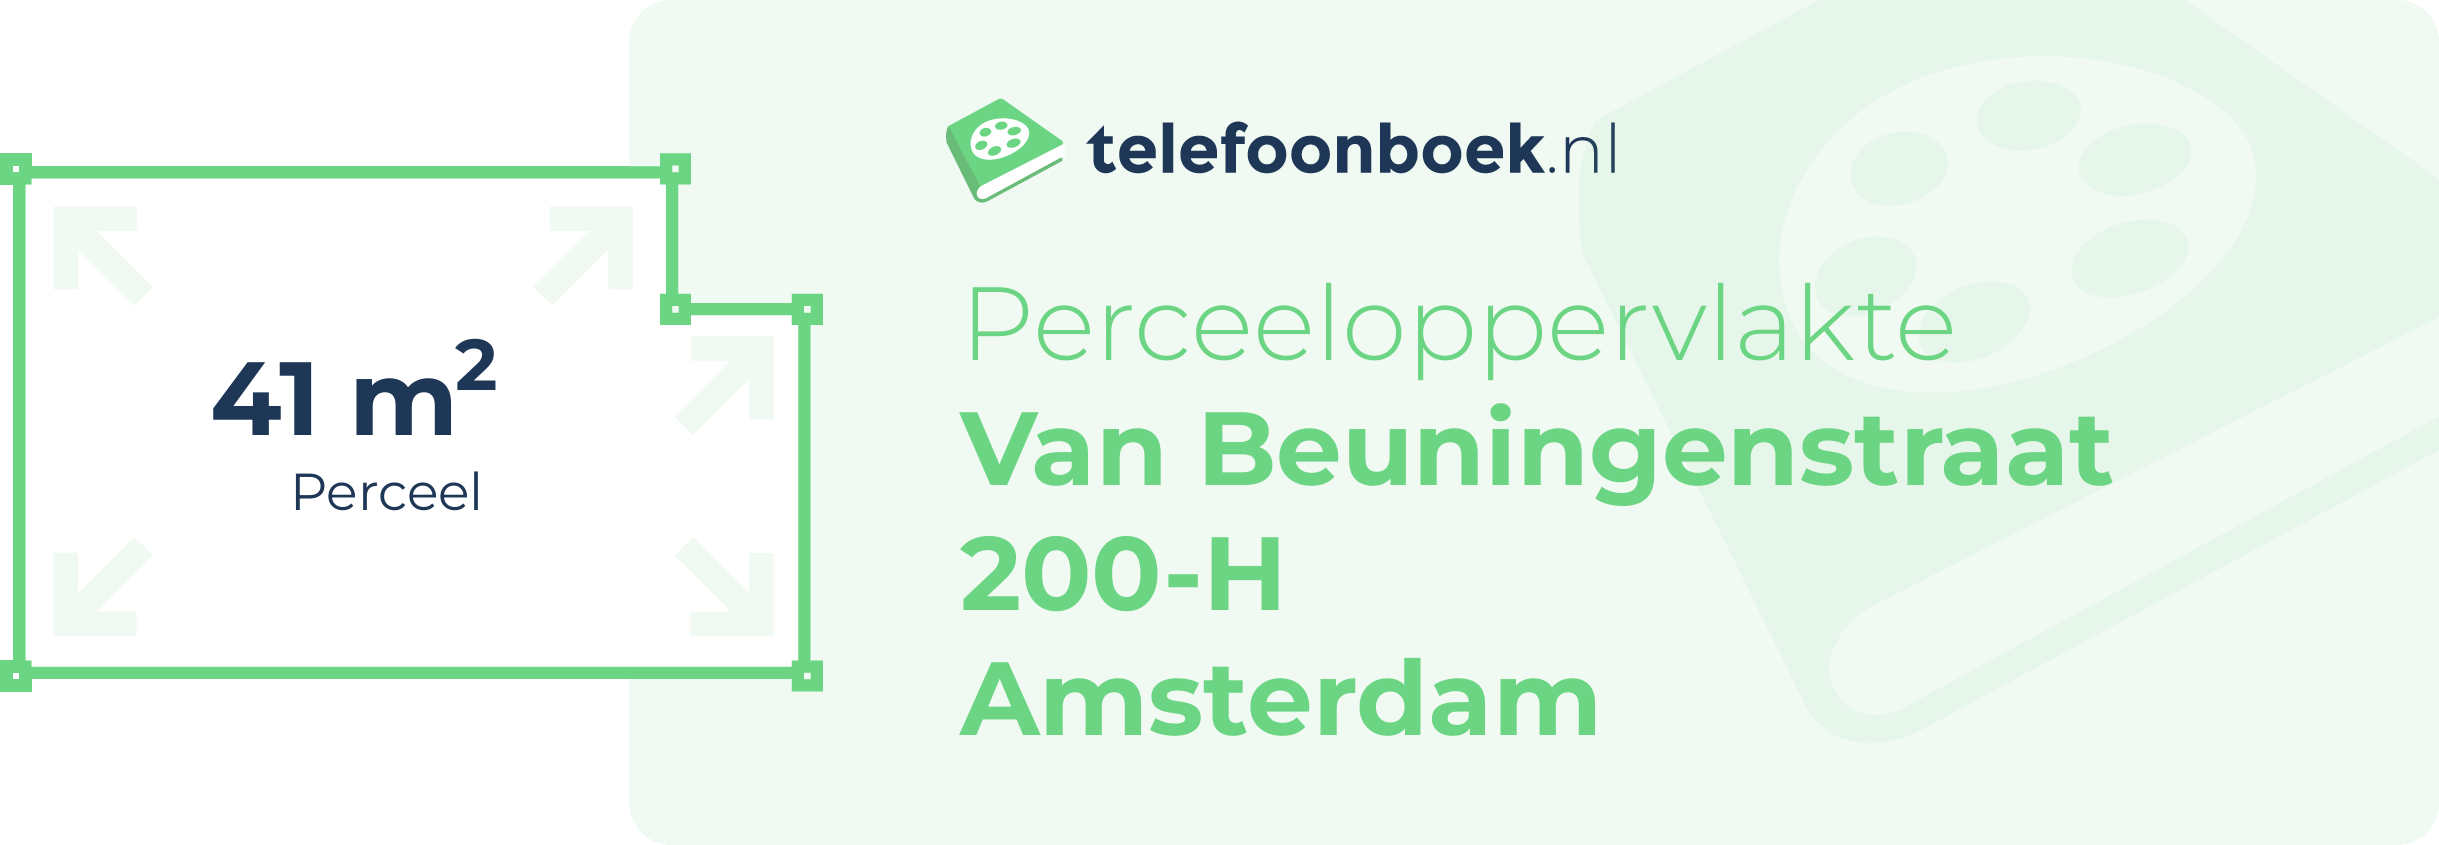 Perceeloppervlakte Van Beuningenstraat 200-H Amsterdam